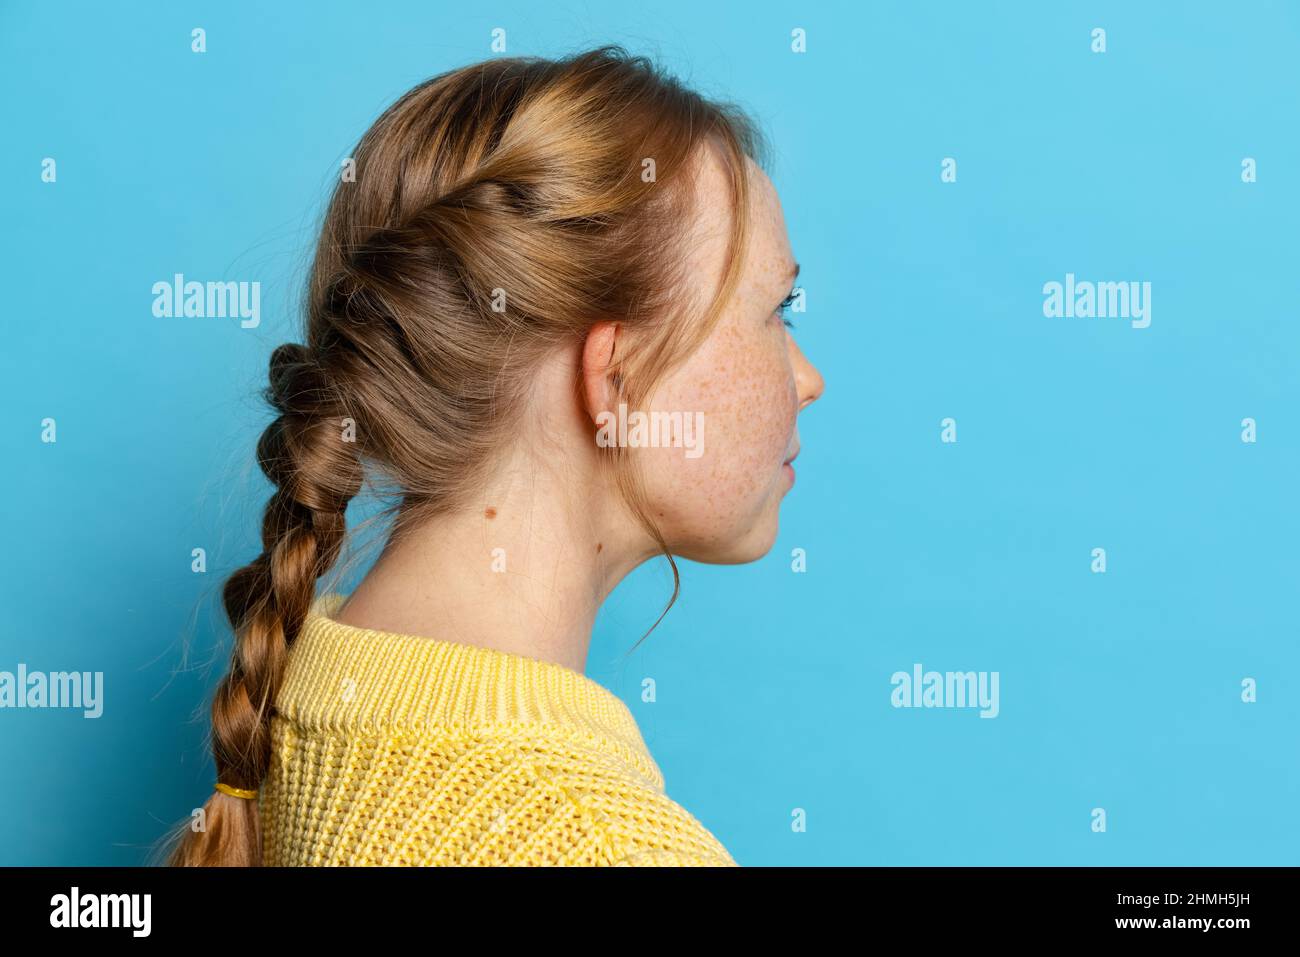 Profilansicht des jungen Mädchens in gelbem Pullover posiert isoliert auf blauem Hintergrund. Konzept der Emotionen, Mimik Stockfoto